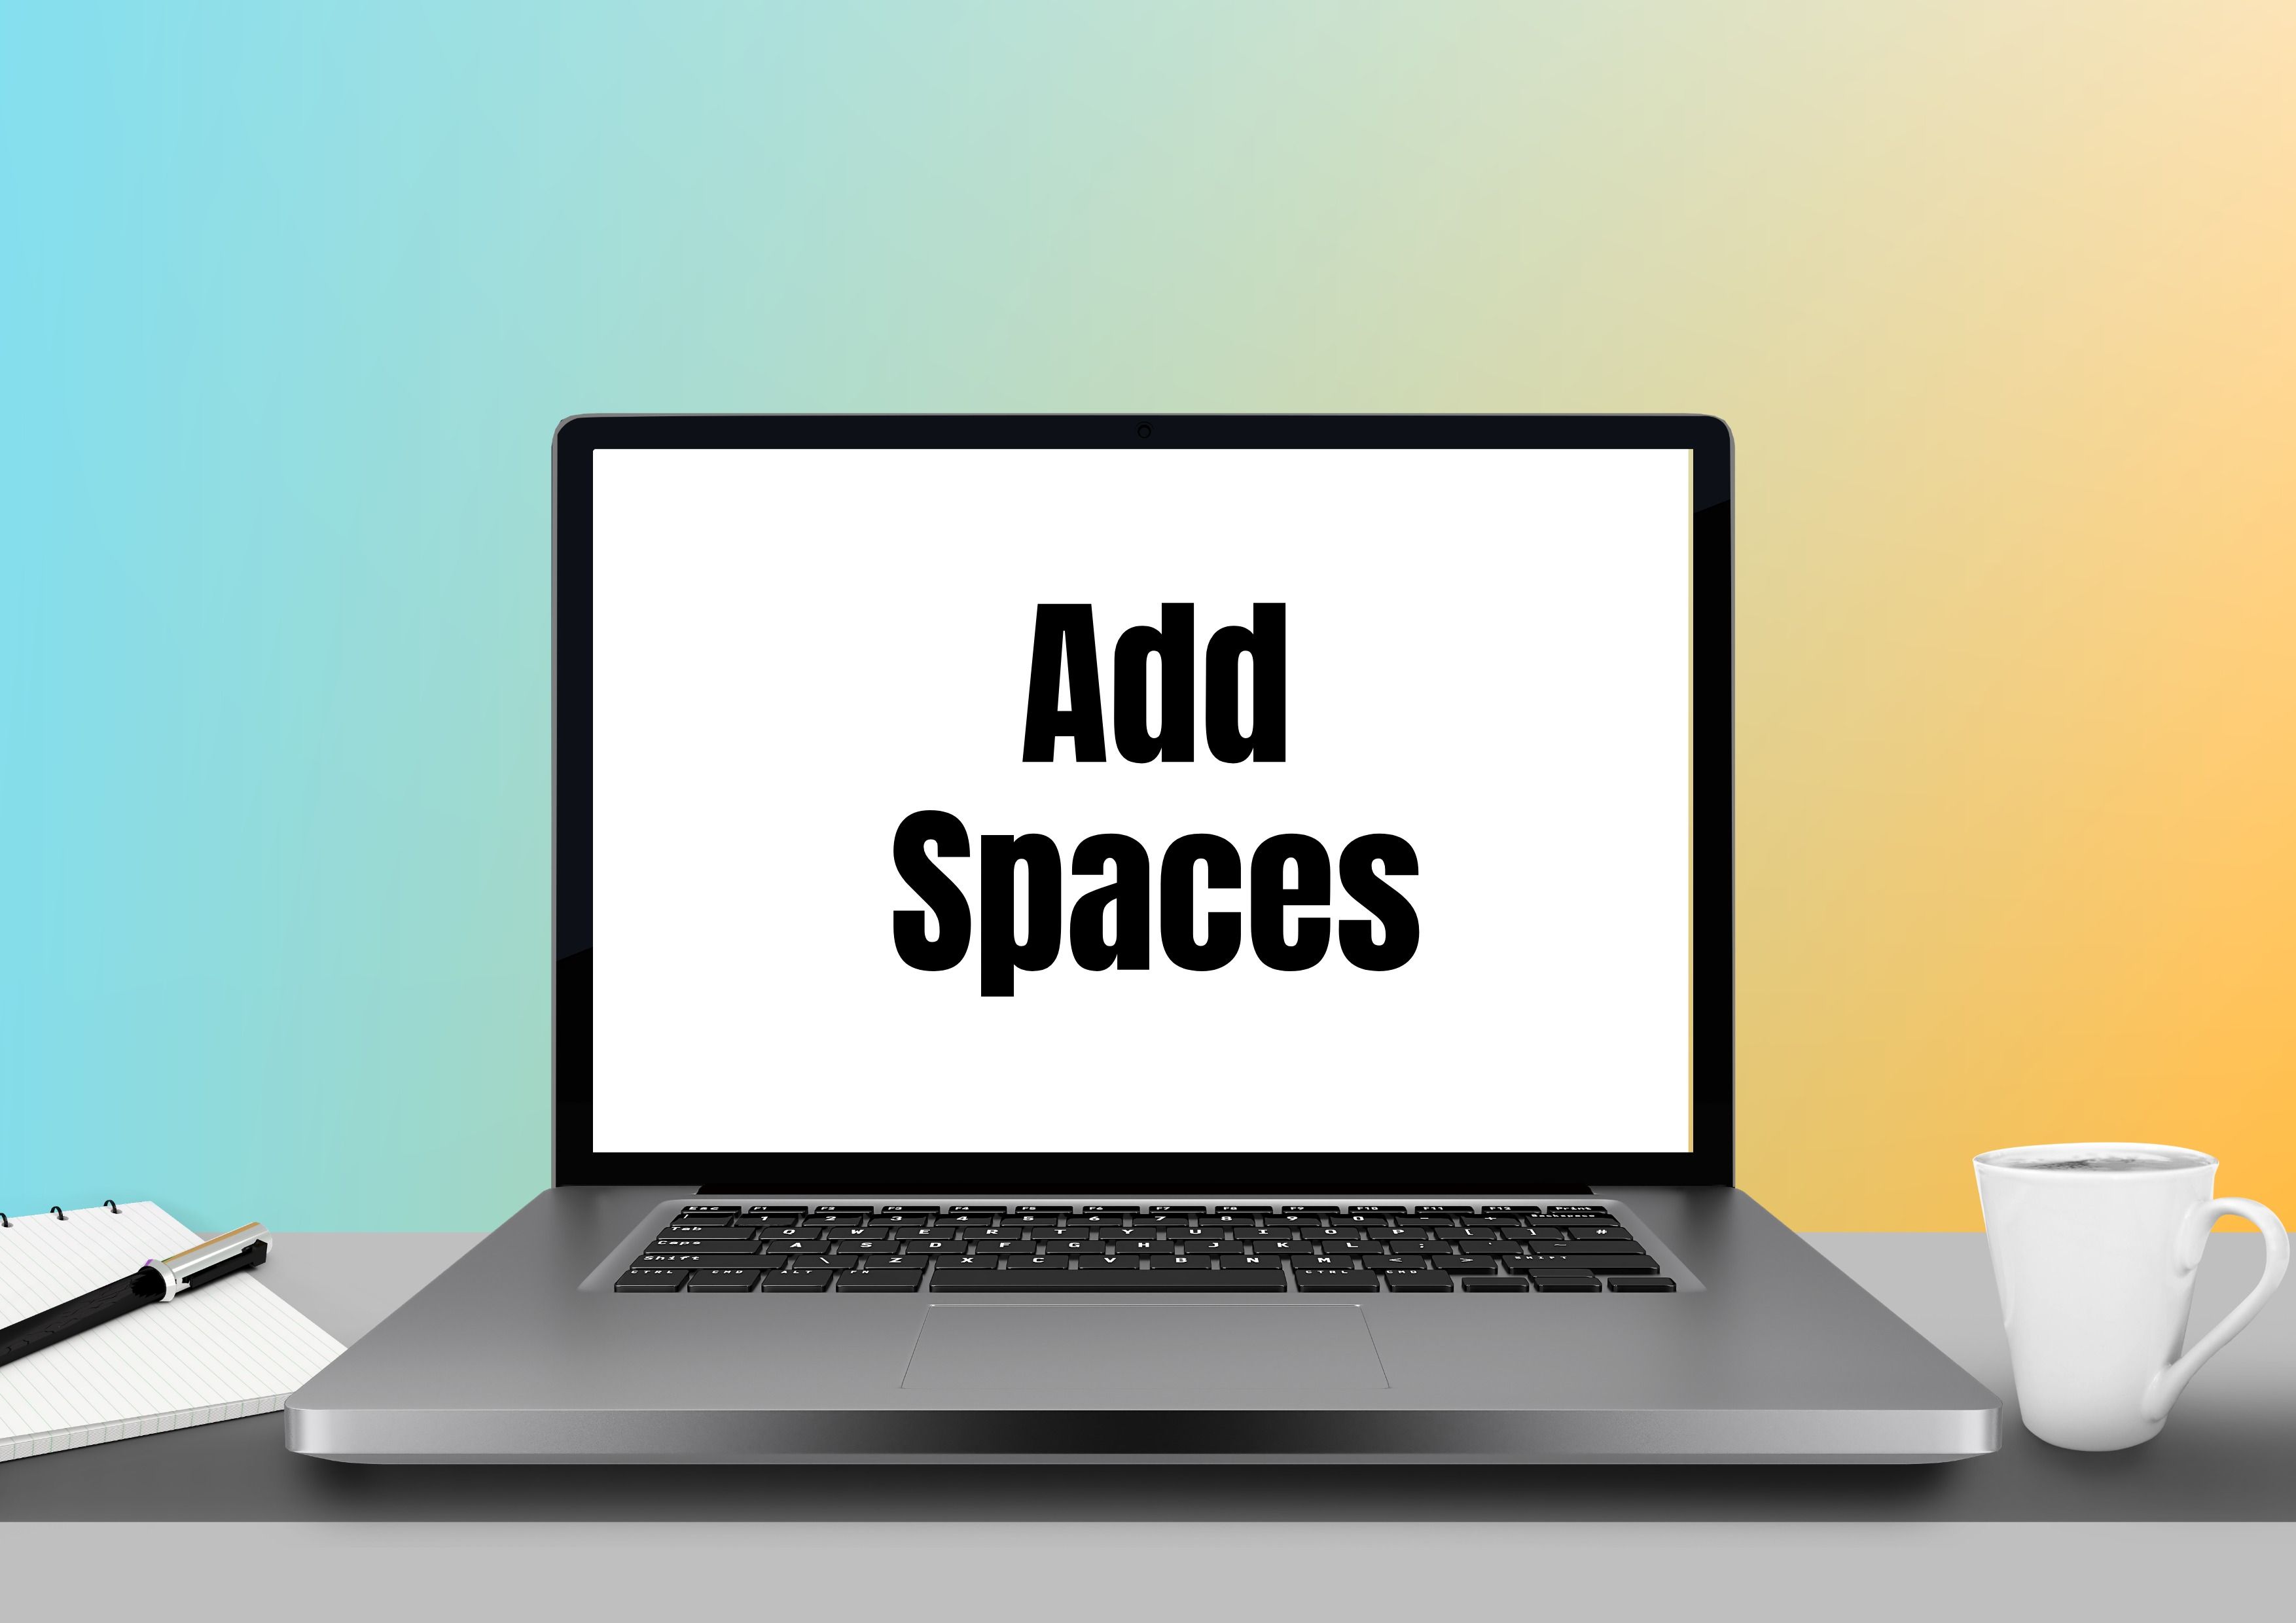 Abre la laptop en un escritorio con un fondo azul y amarillo - Agrega espacios a tu publicación de Instagram - Imagen